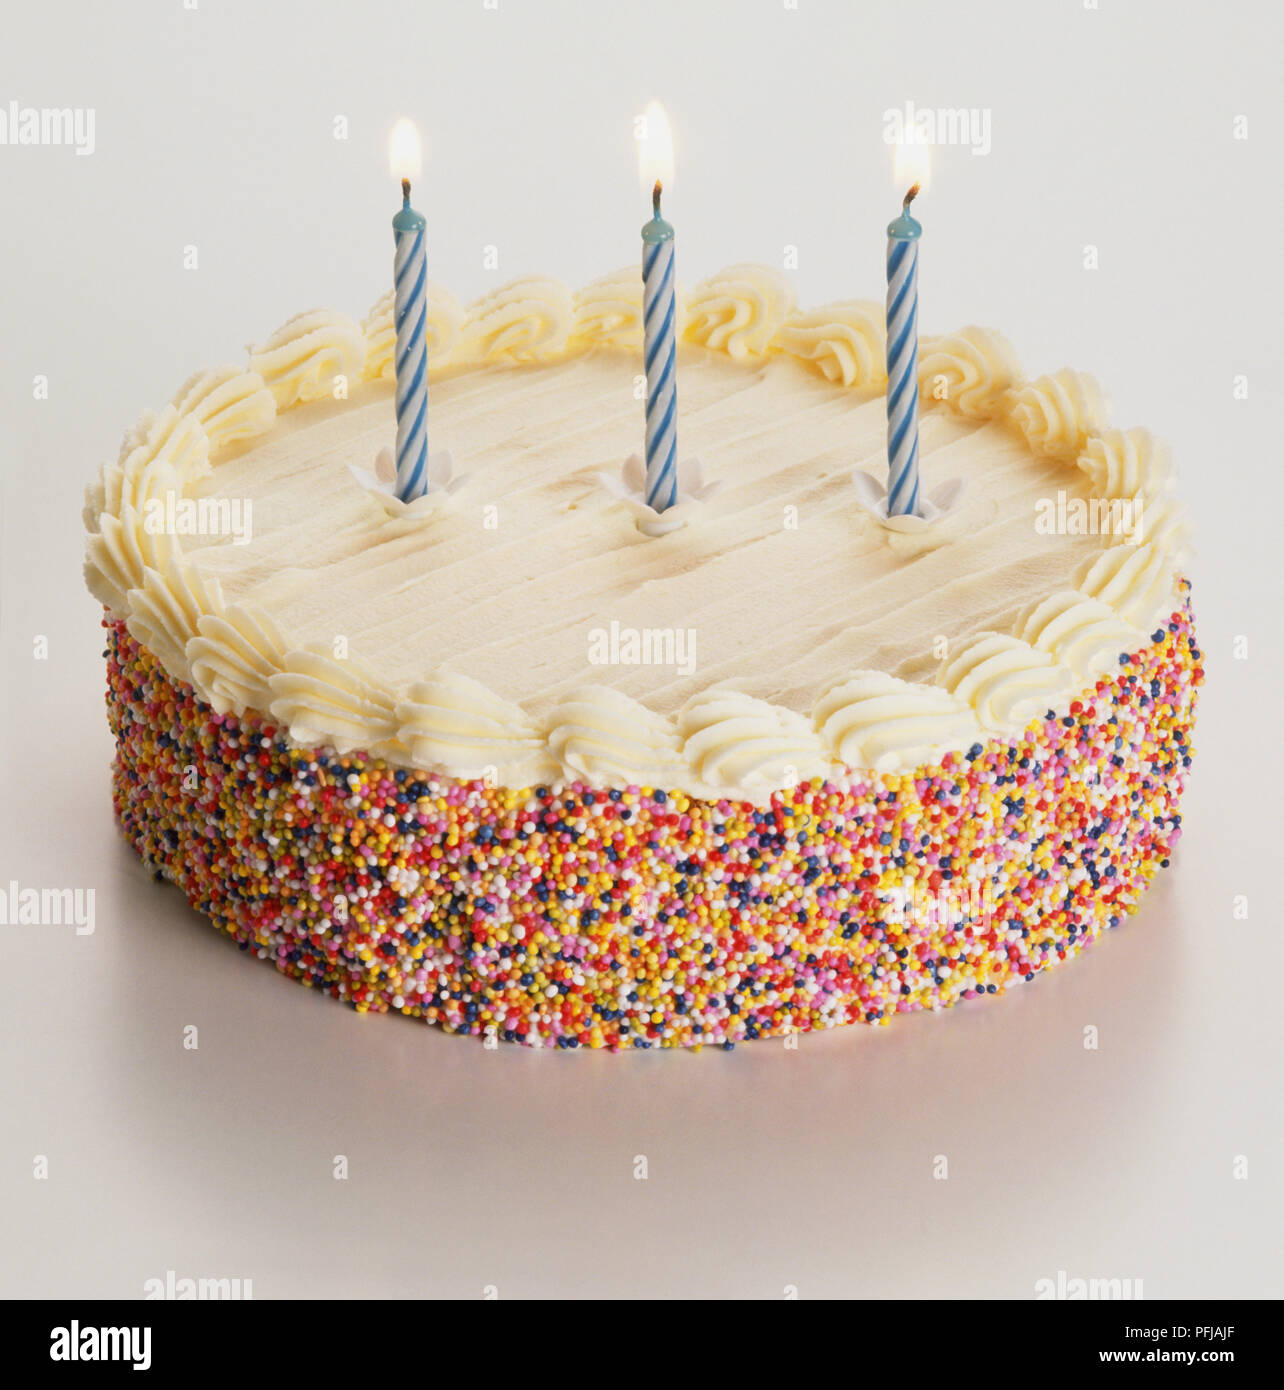 Gâteau d'anniversaire avec trois bougies allumées Photo Stock - Alamy